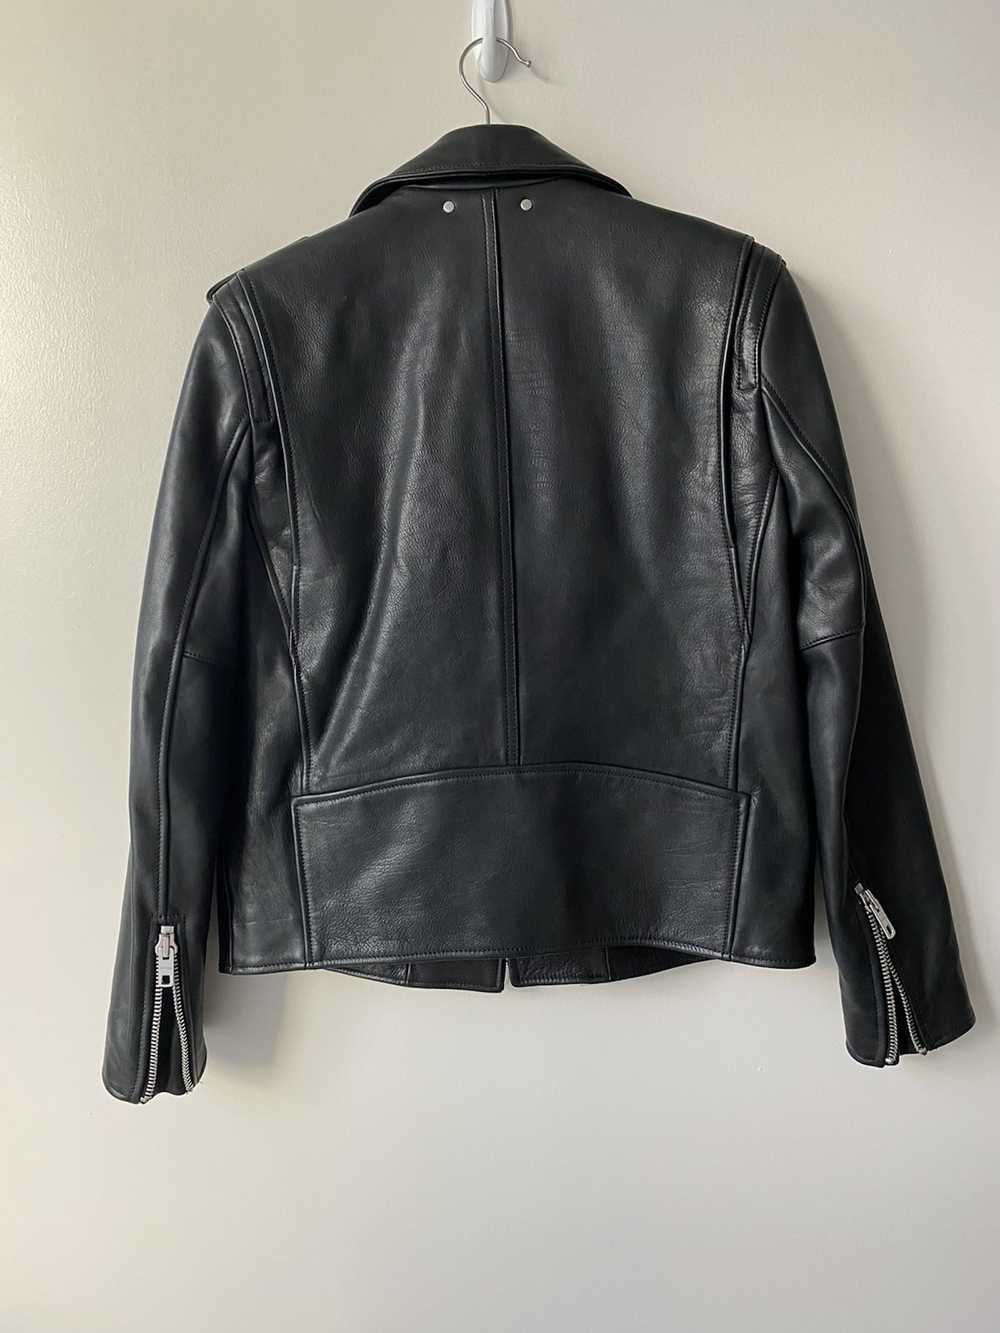 Coach Leather Moto Jacket - image 4